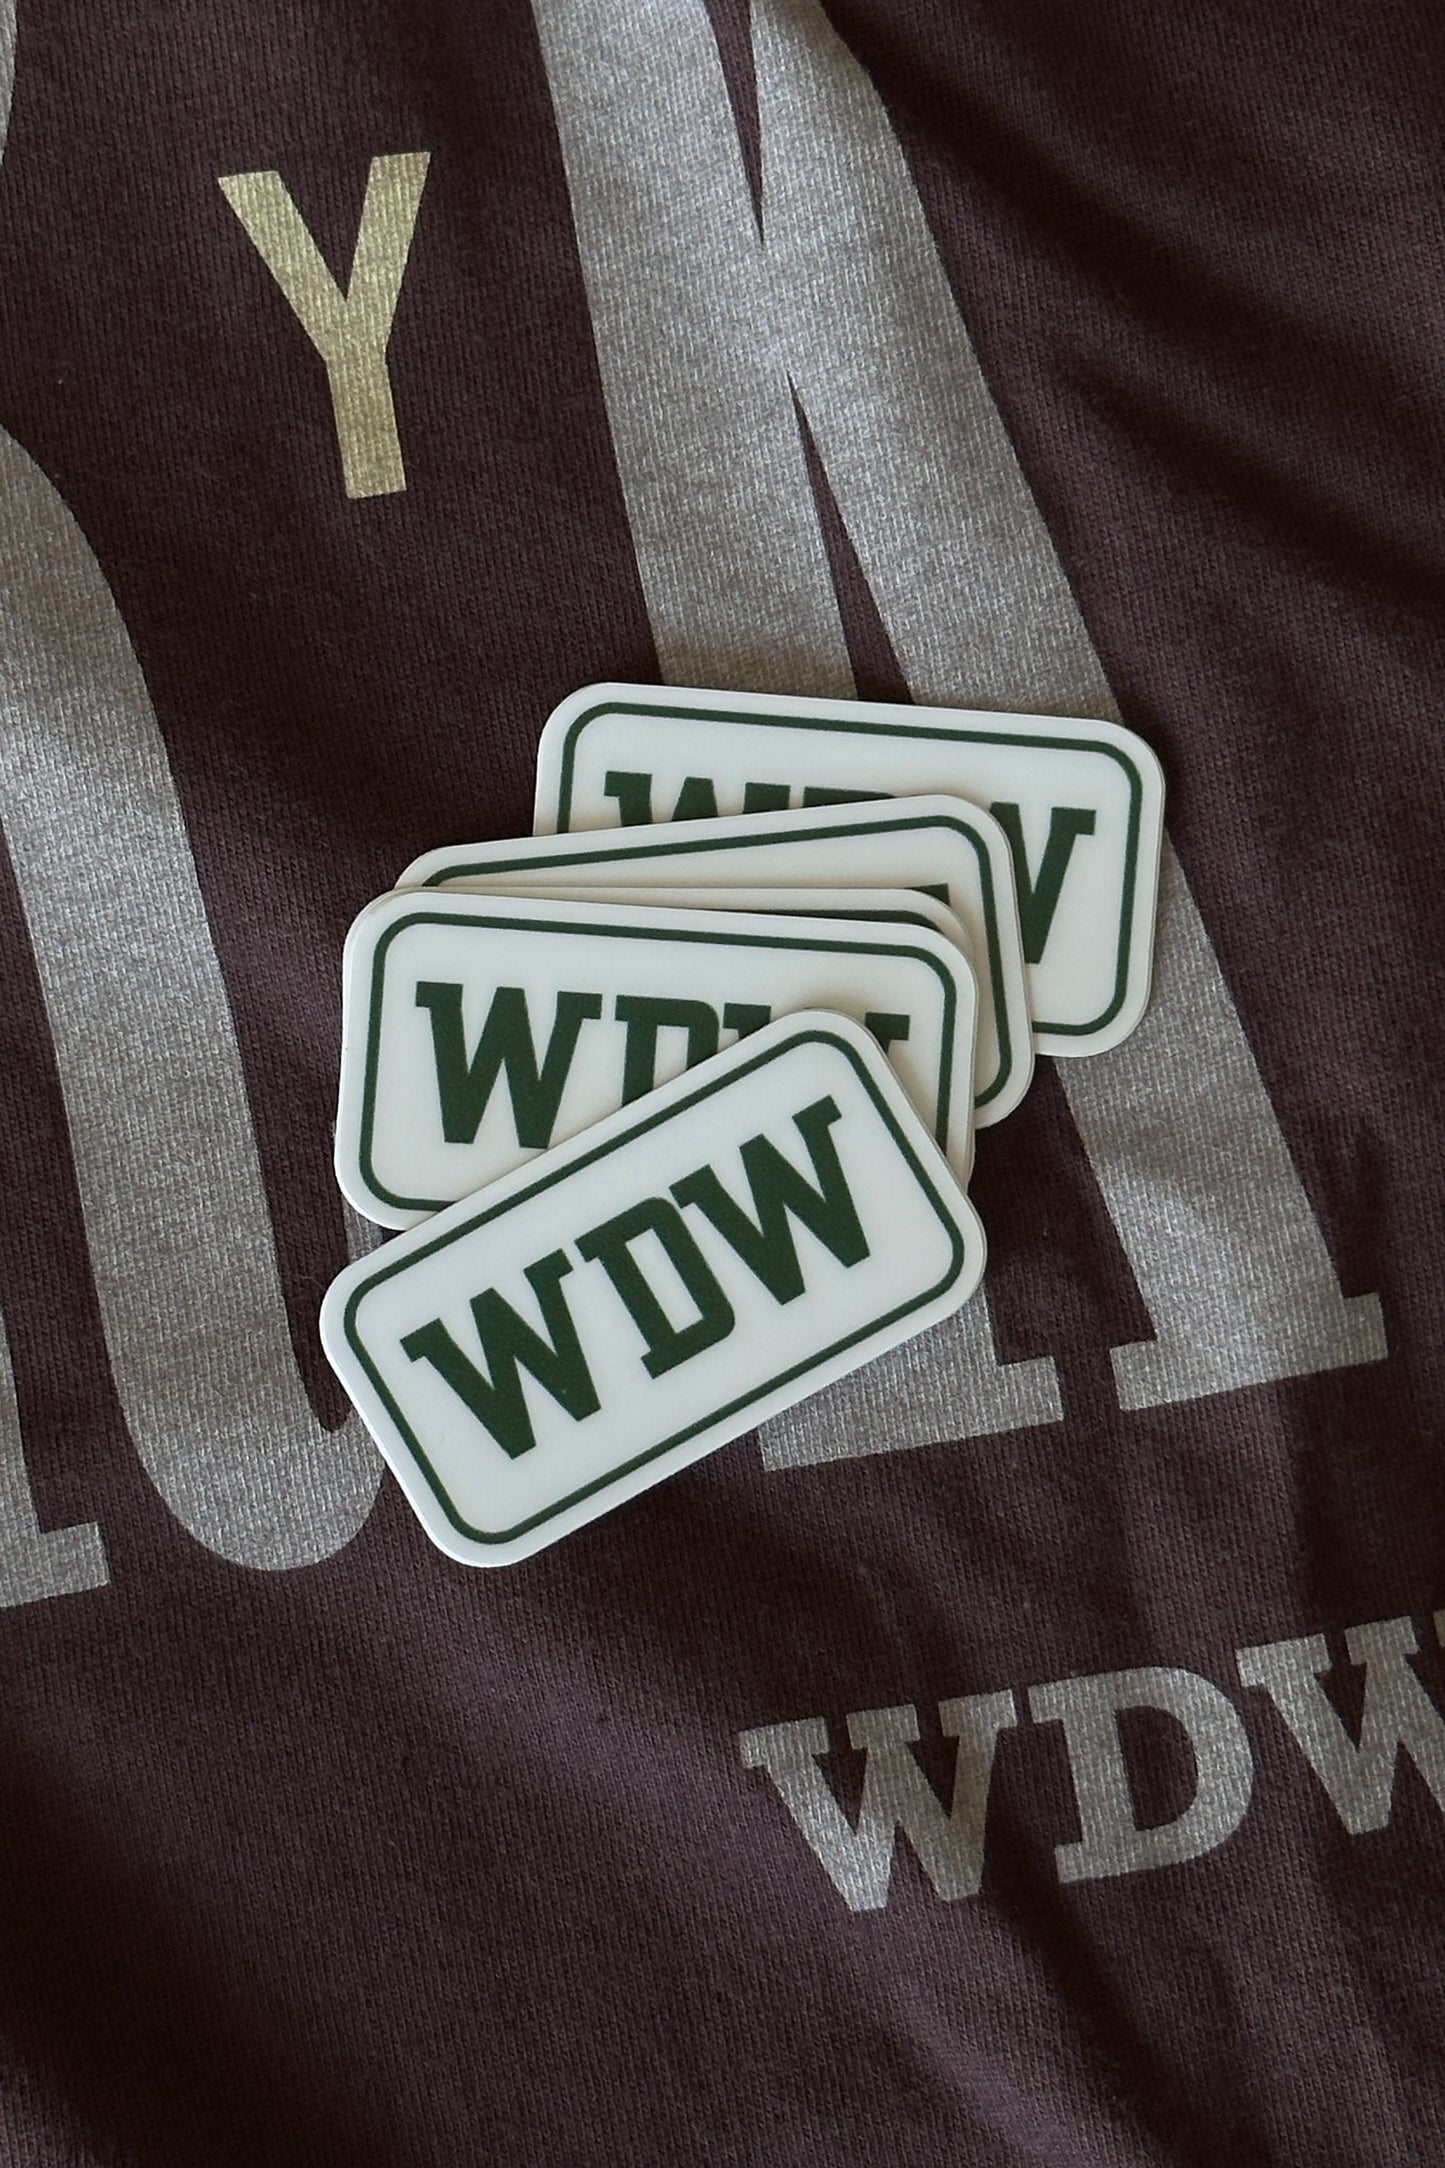 The WDW Sticker